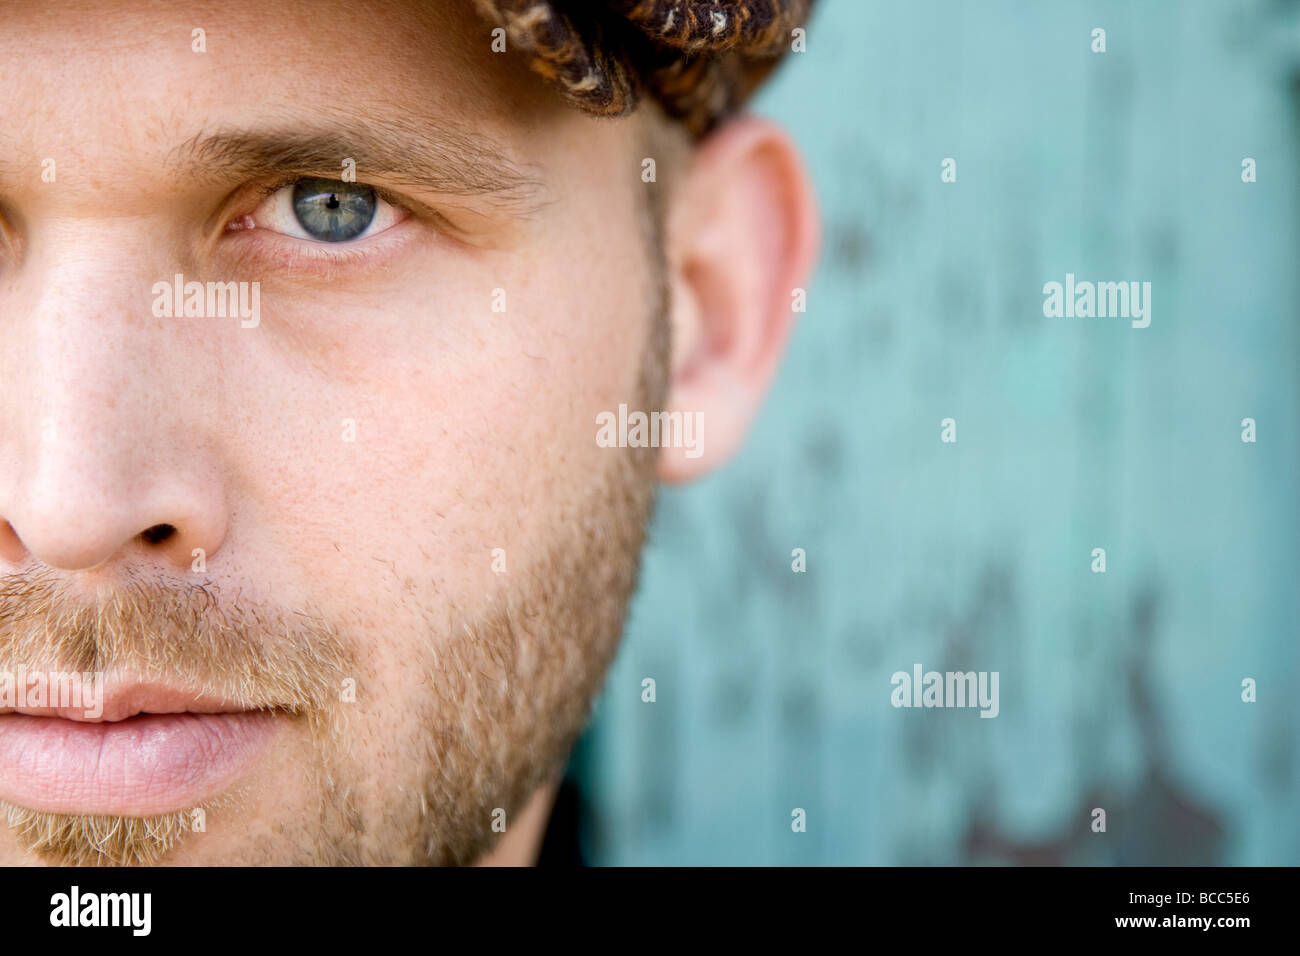 Un retrato de un hombre de ojos azules con una corta barba rubia mirando a  la cámara. La imagen se recorta, mostrando sólo la mitad de su rostro  Fotografía de stock 